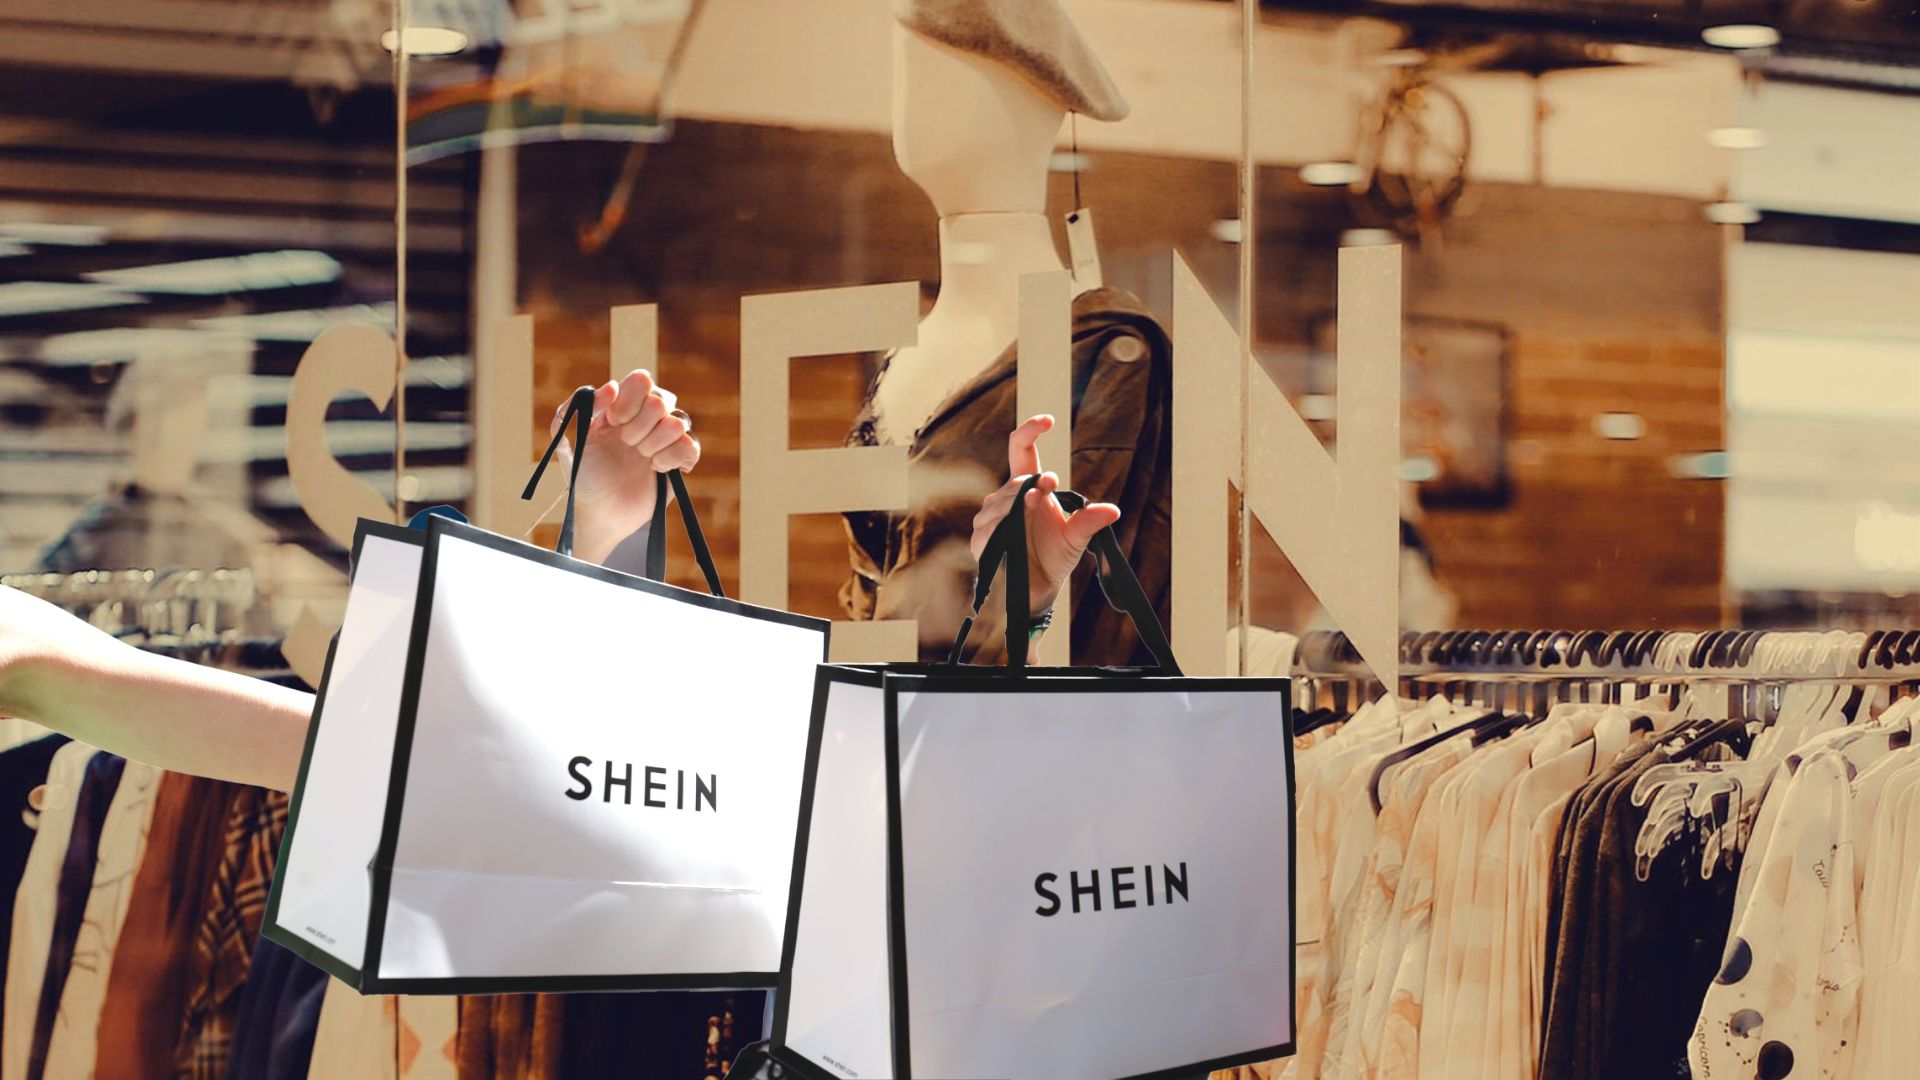 Abre Shein en Barcelona: Horarios y dirección de la tienda física